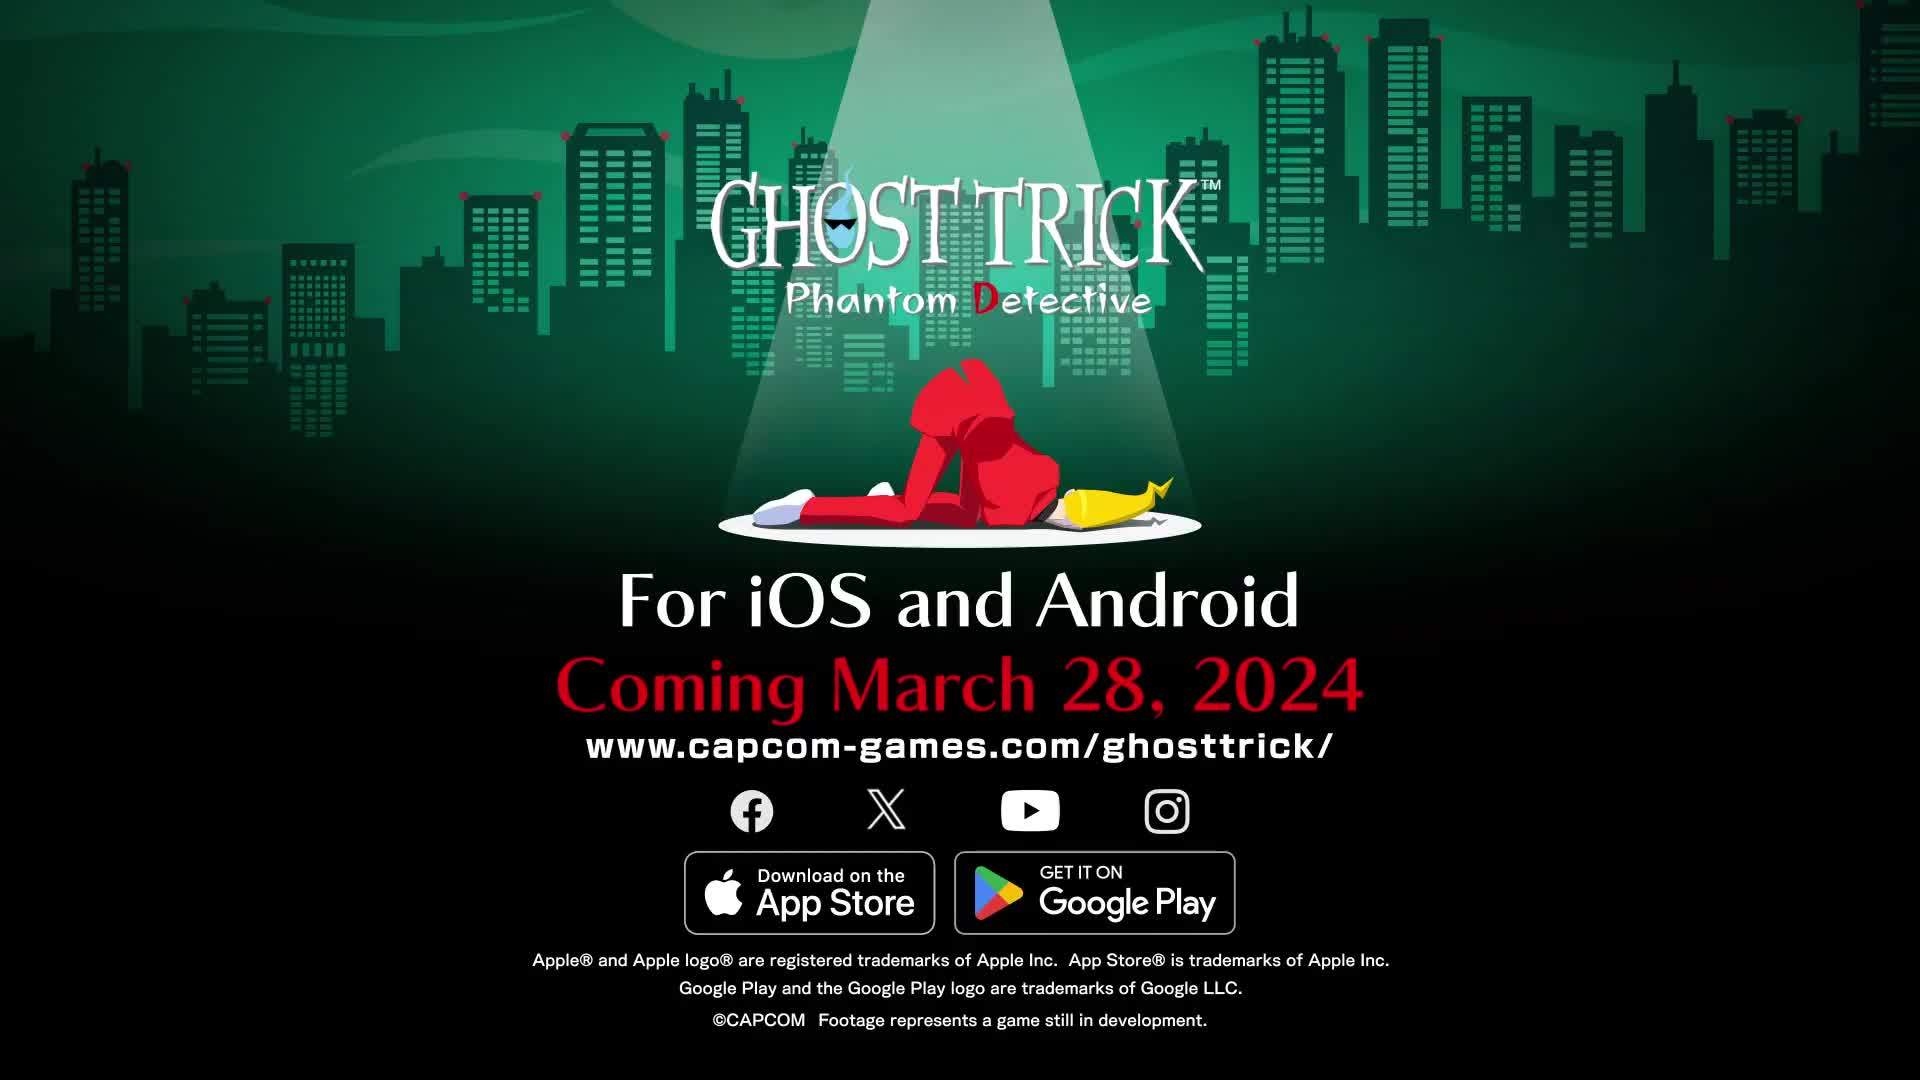 卡普空推理解谜游戏《幽灵诡计》复刻版3月28日登陆iOS及安卓平台